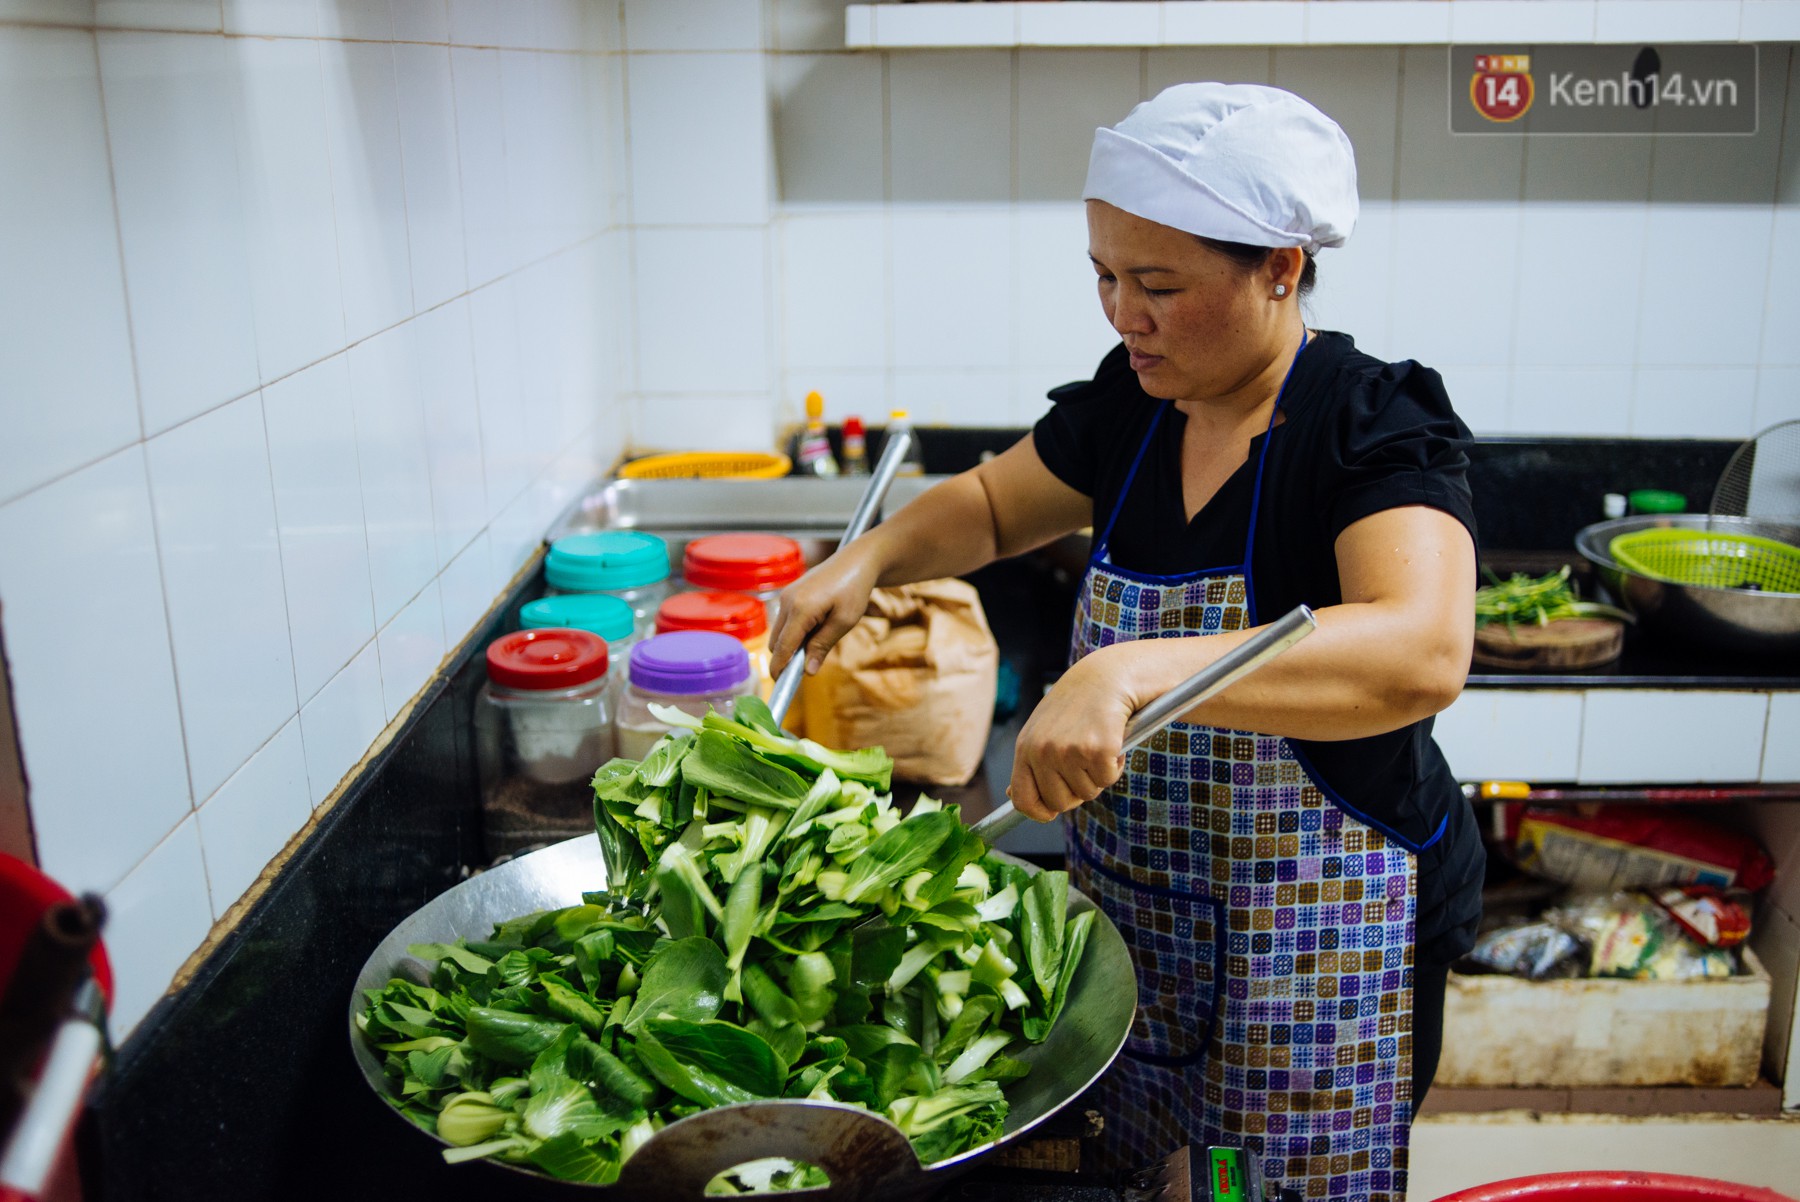 Giàu như anh bán chuối chiên Sài Gòn: Mở quán cơm 5k cho người thu nhập chưa cao, 5 năm đắt hàng - Ảnh 10.